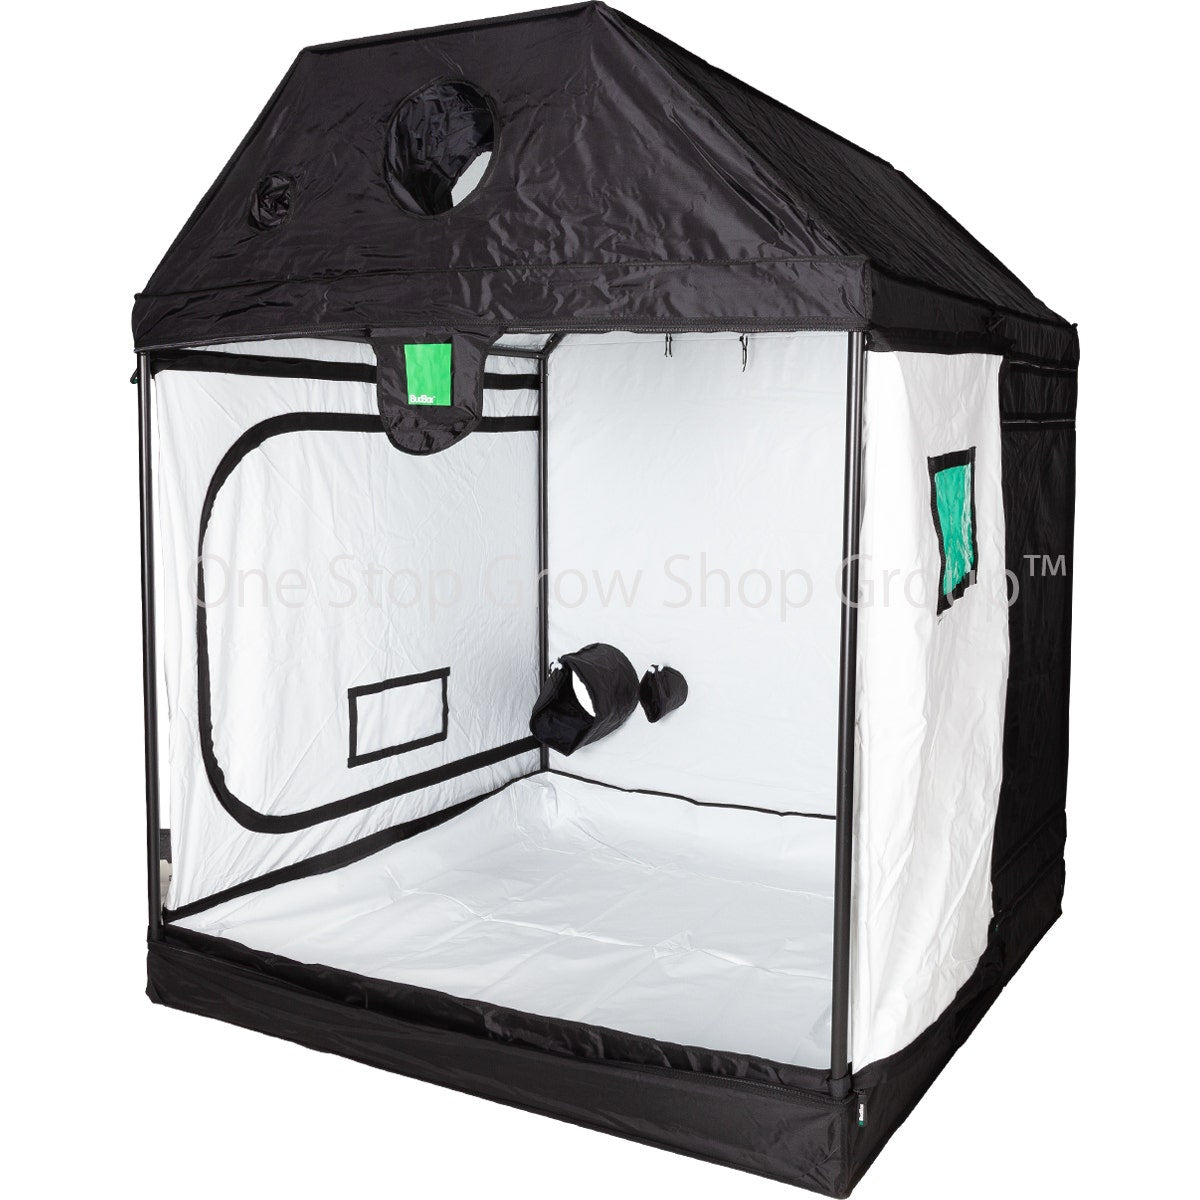 BudBox Pro - Pitched Roof - 1.5m x 1.5m x 1.8m - Loft Grow Tent